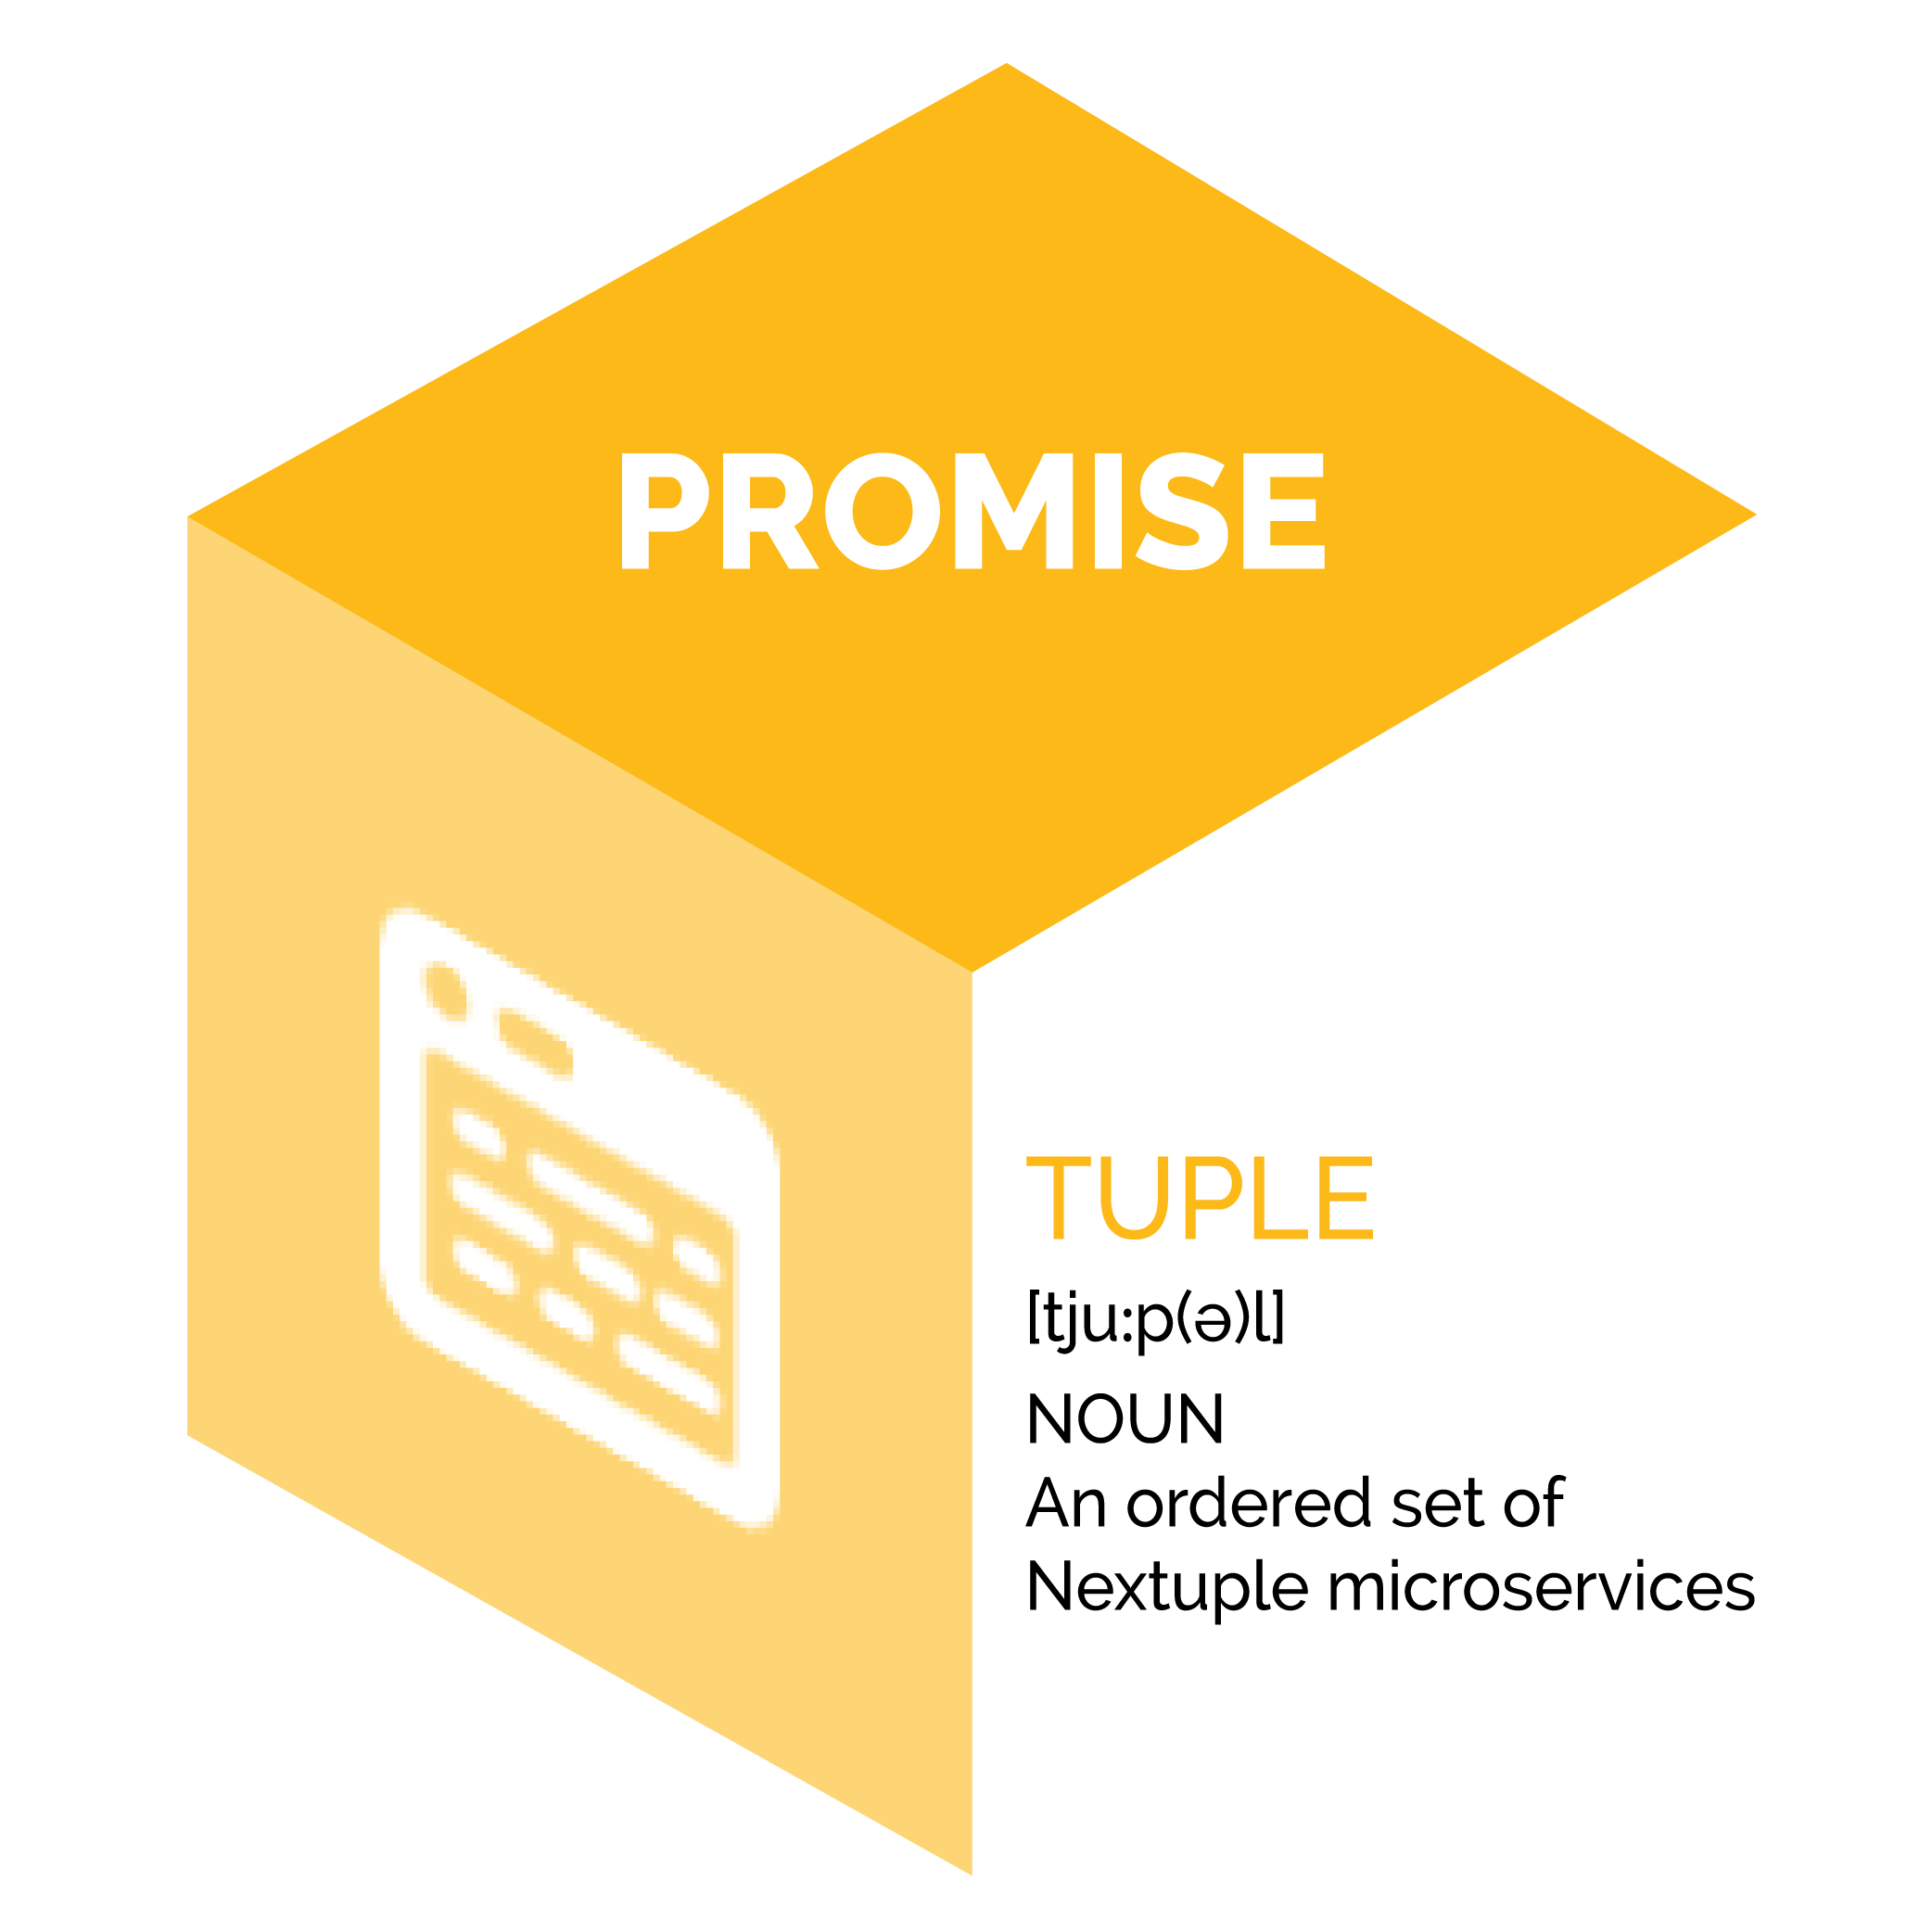 promise tuple image definition